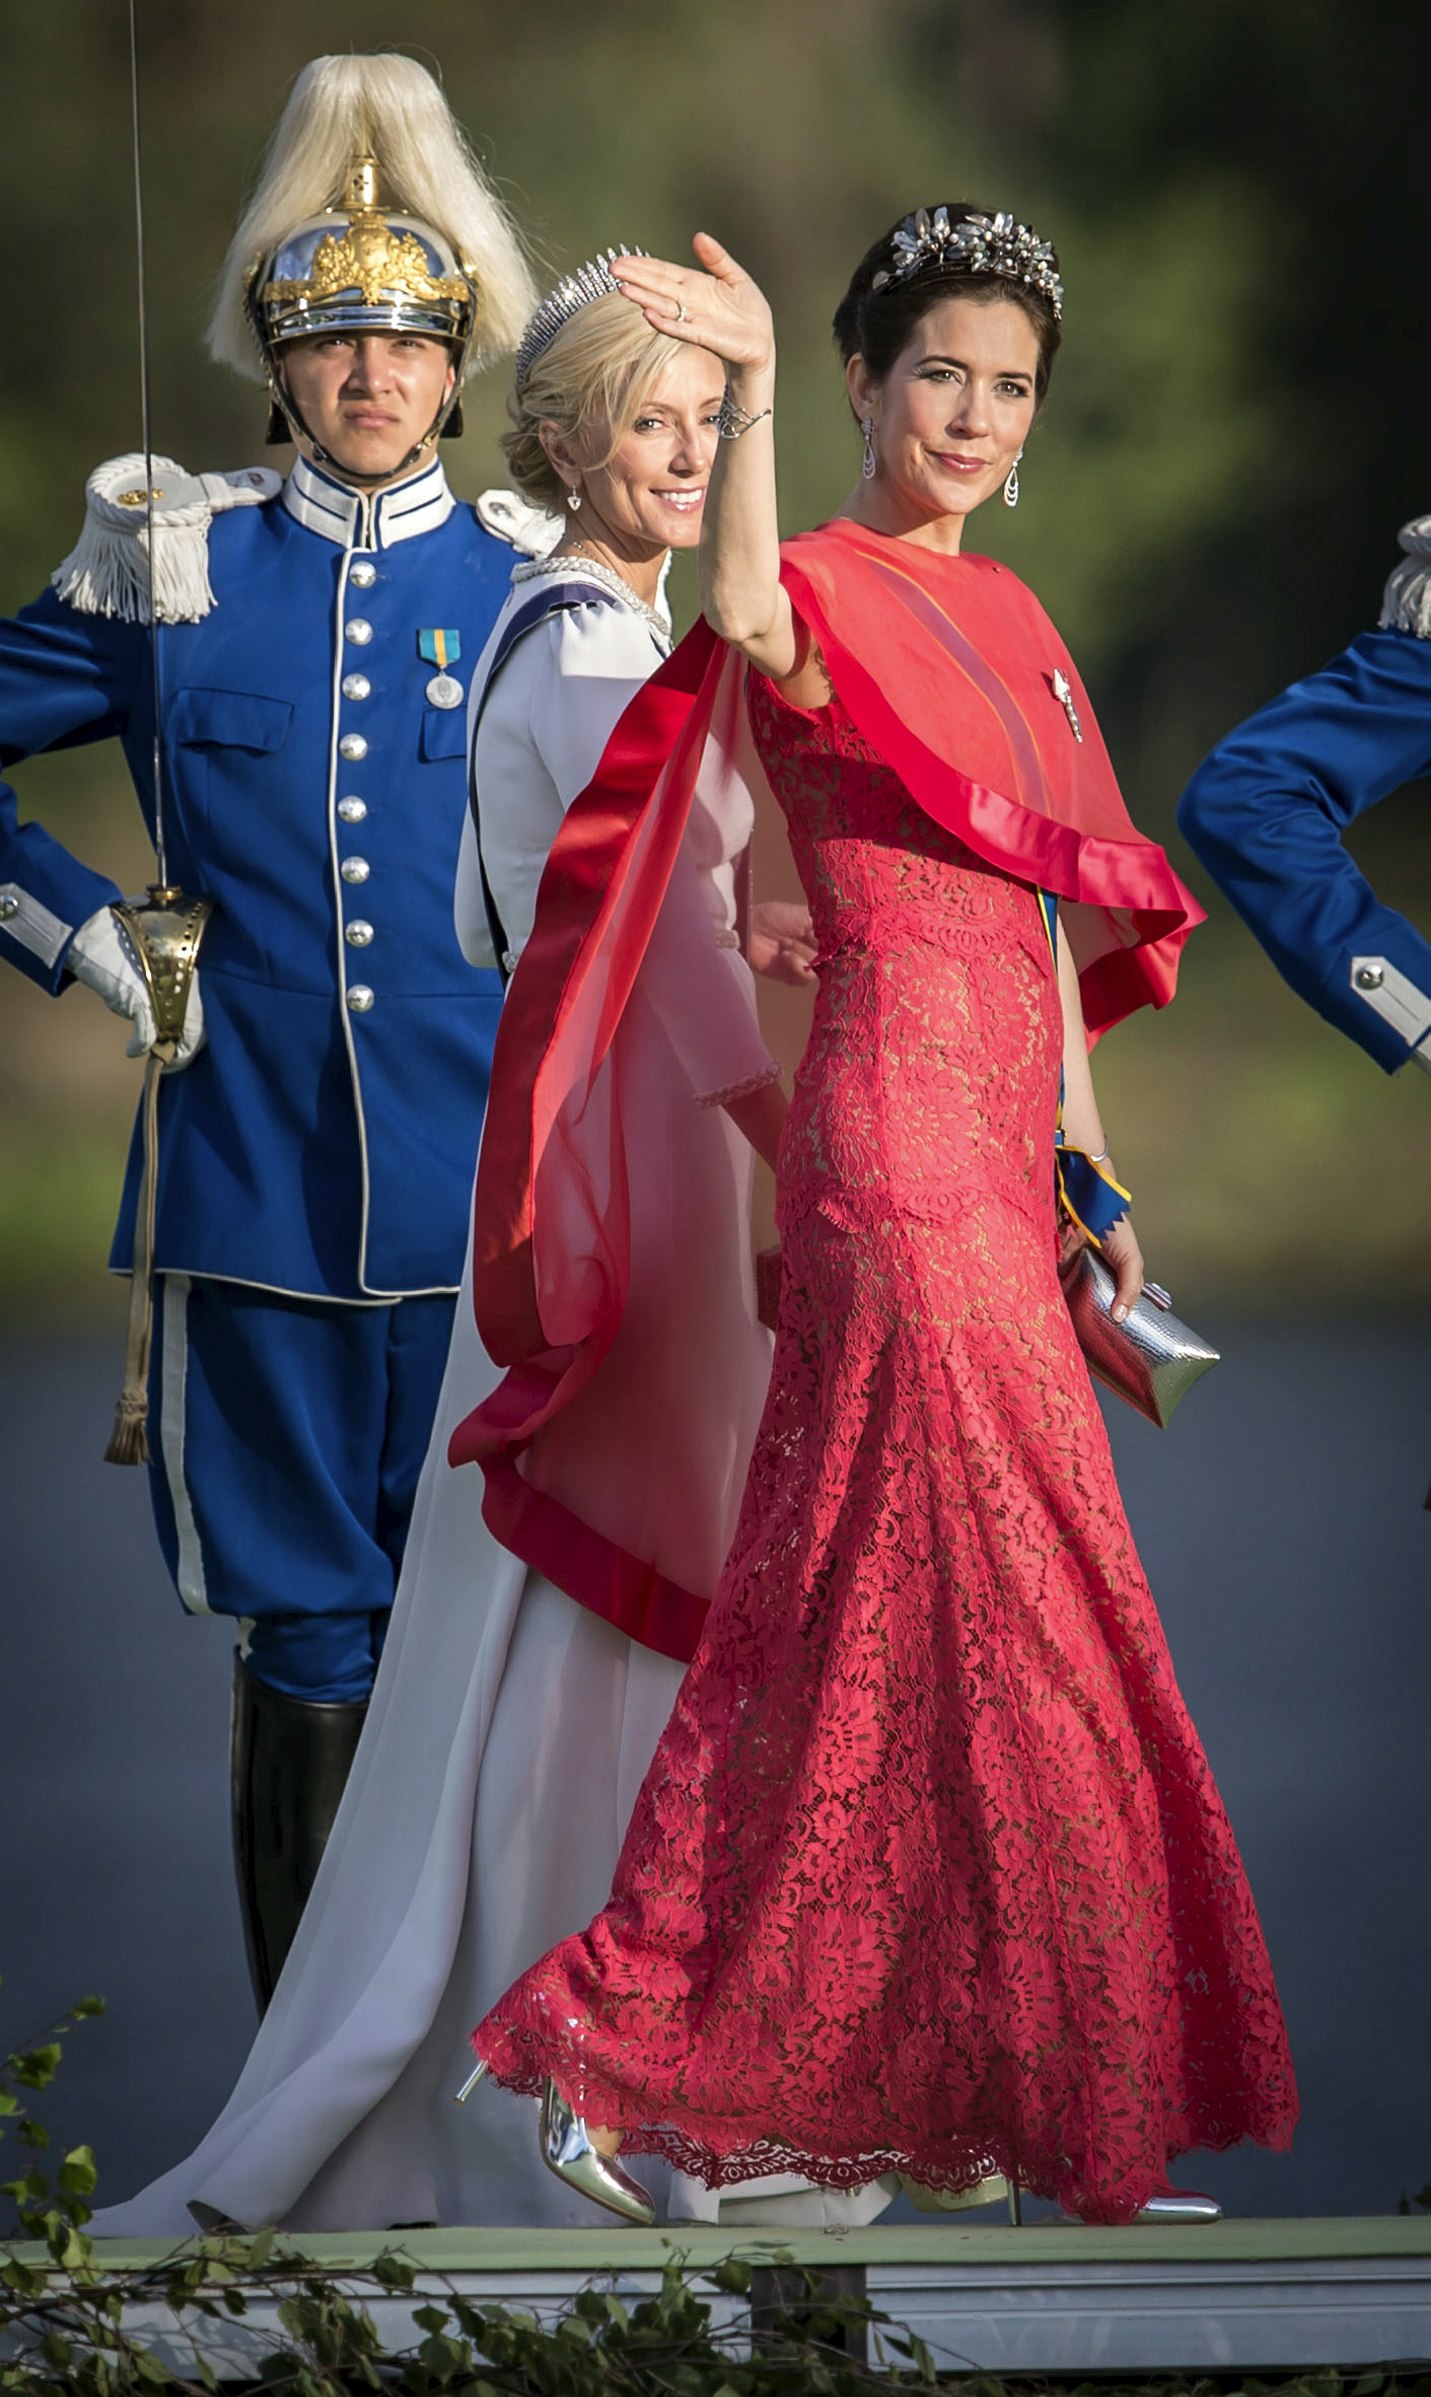 Kronprinsesse til fest genbrugskjole: Den er kortere! | SE og HØR